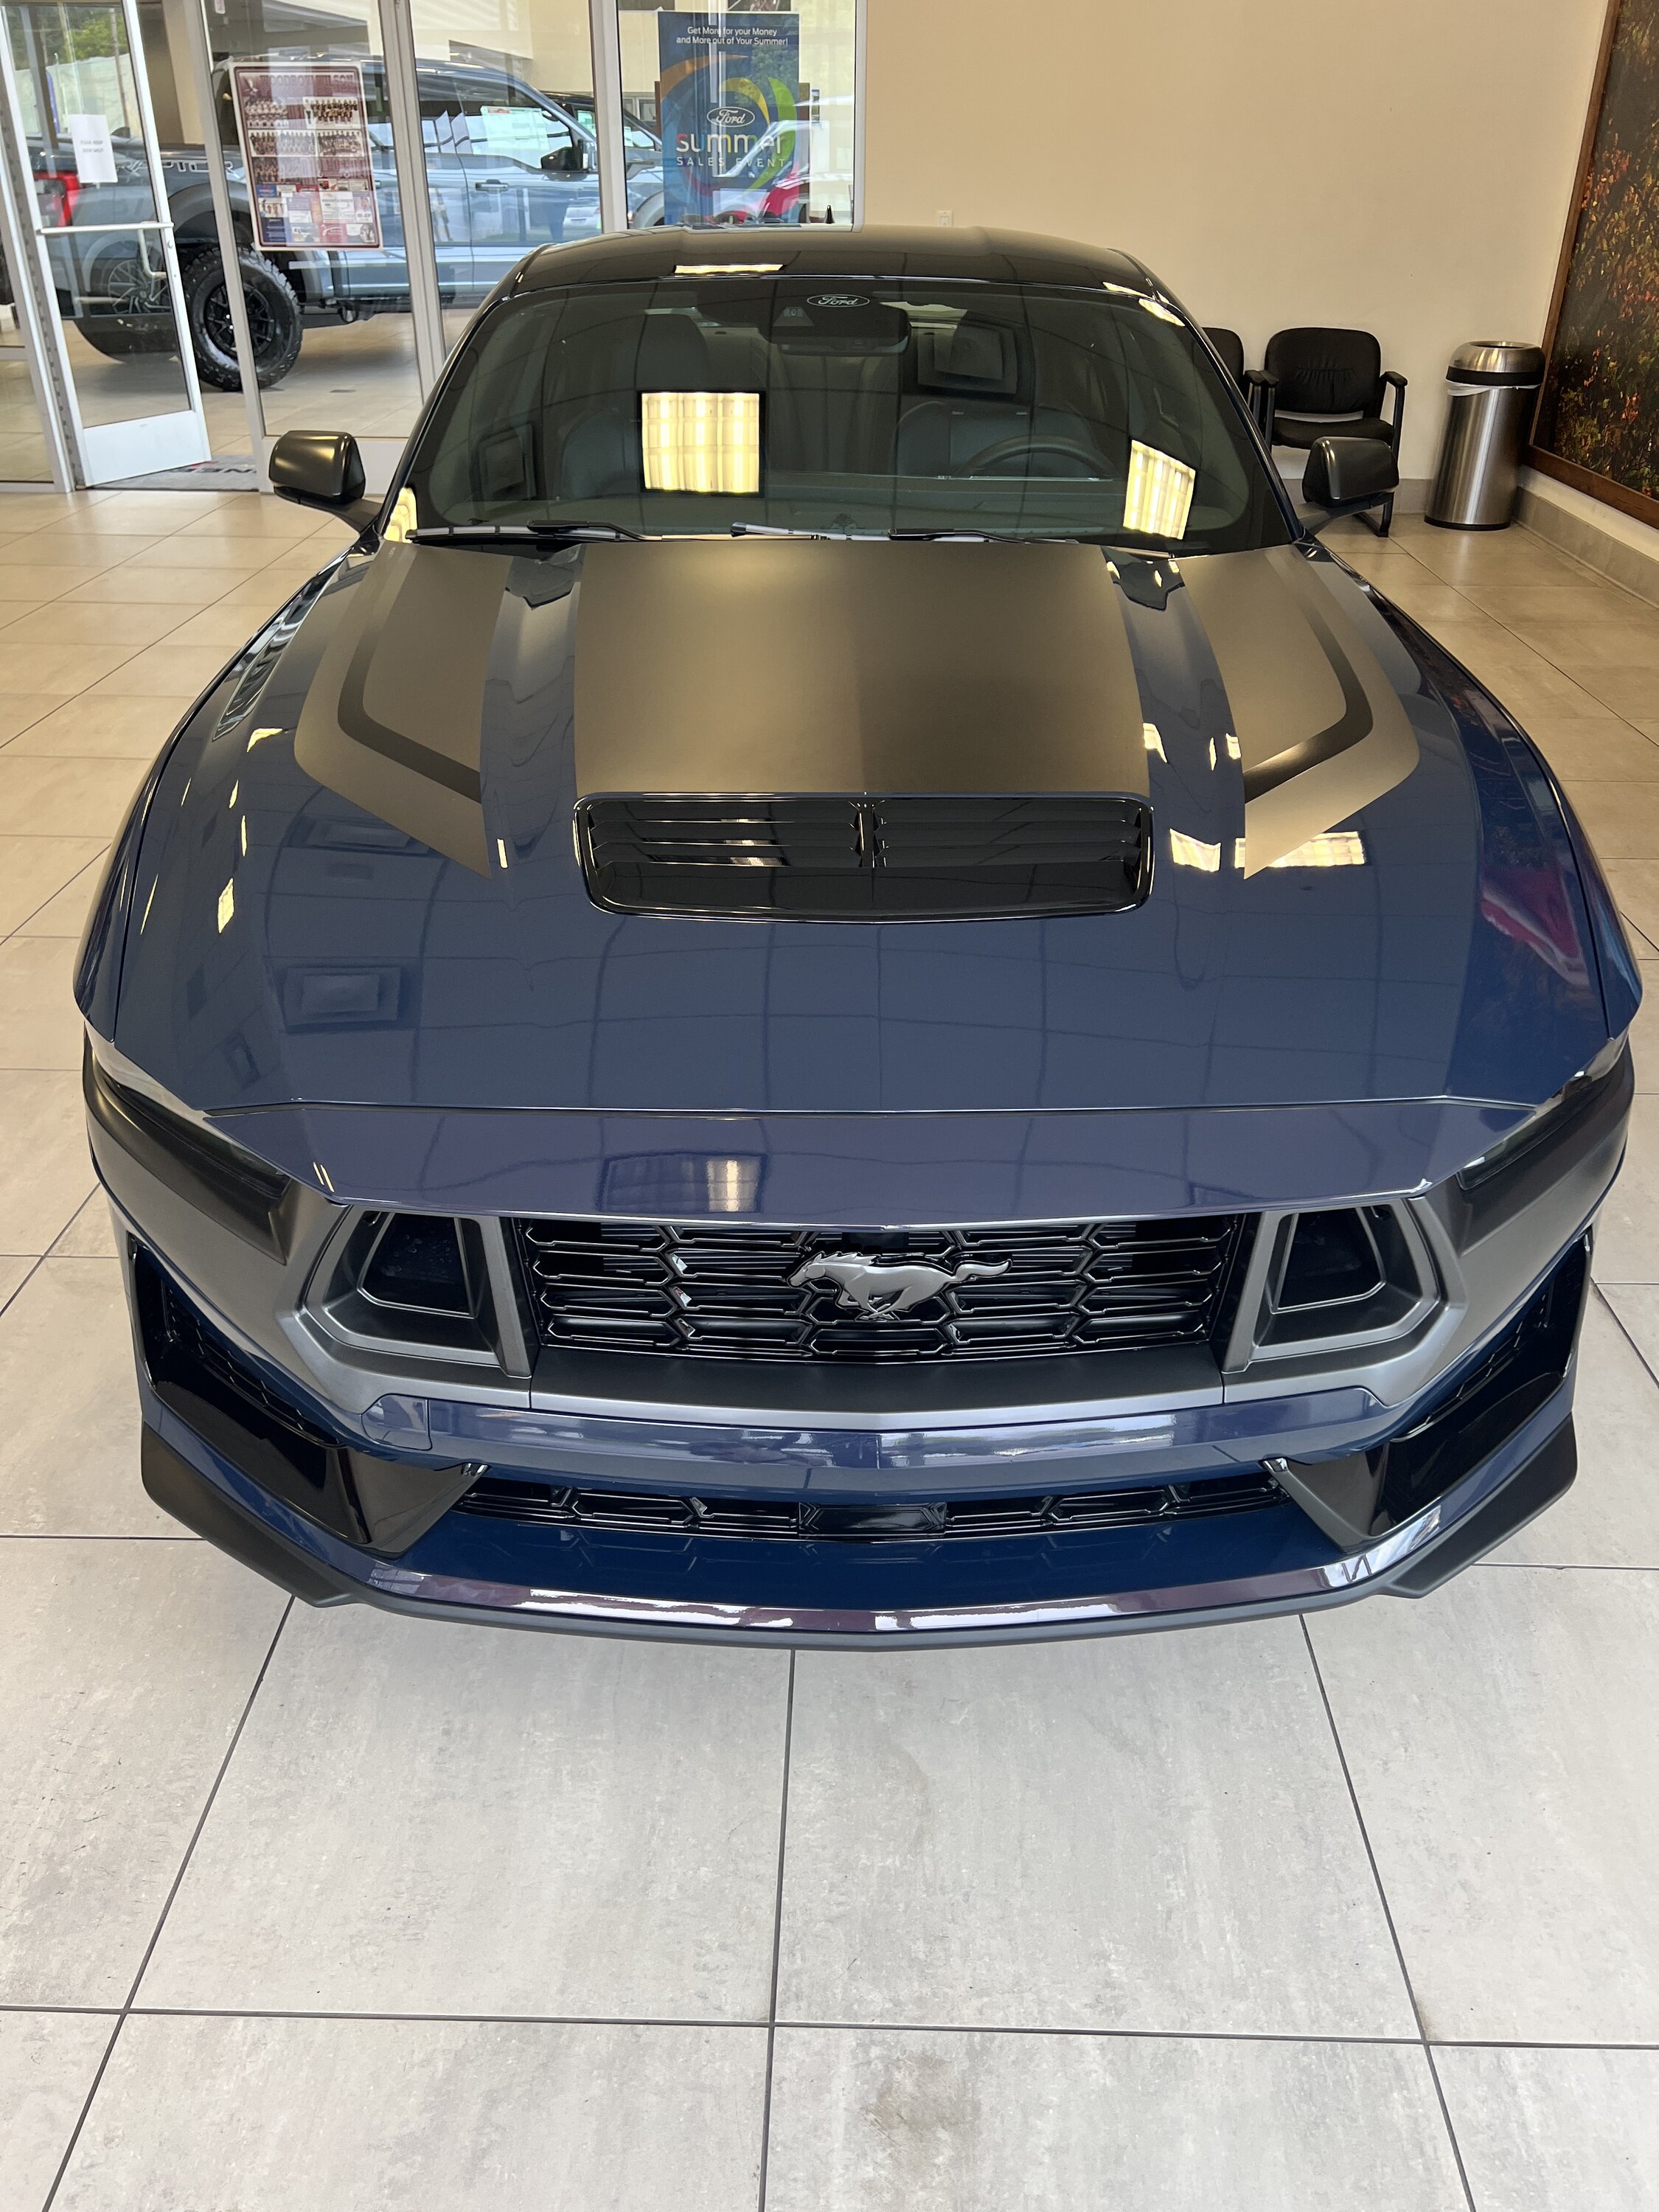 S650 Mustang Blue Ember Dark Horse arrived! IMG_2373